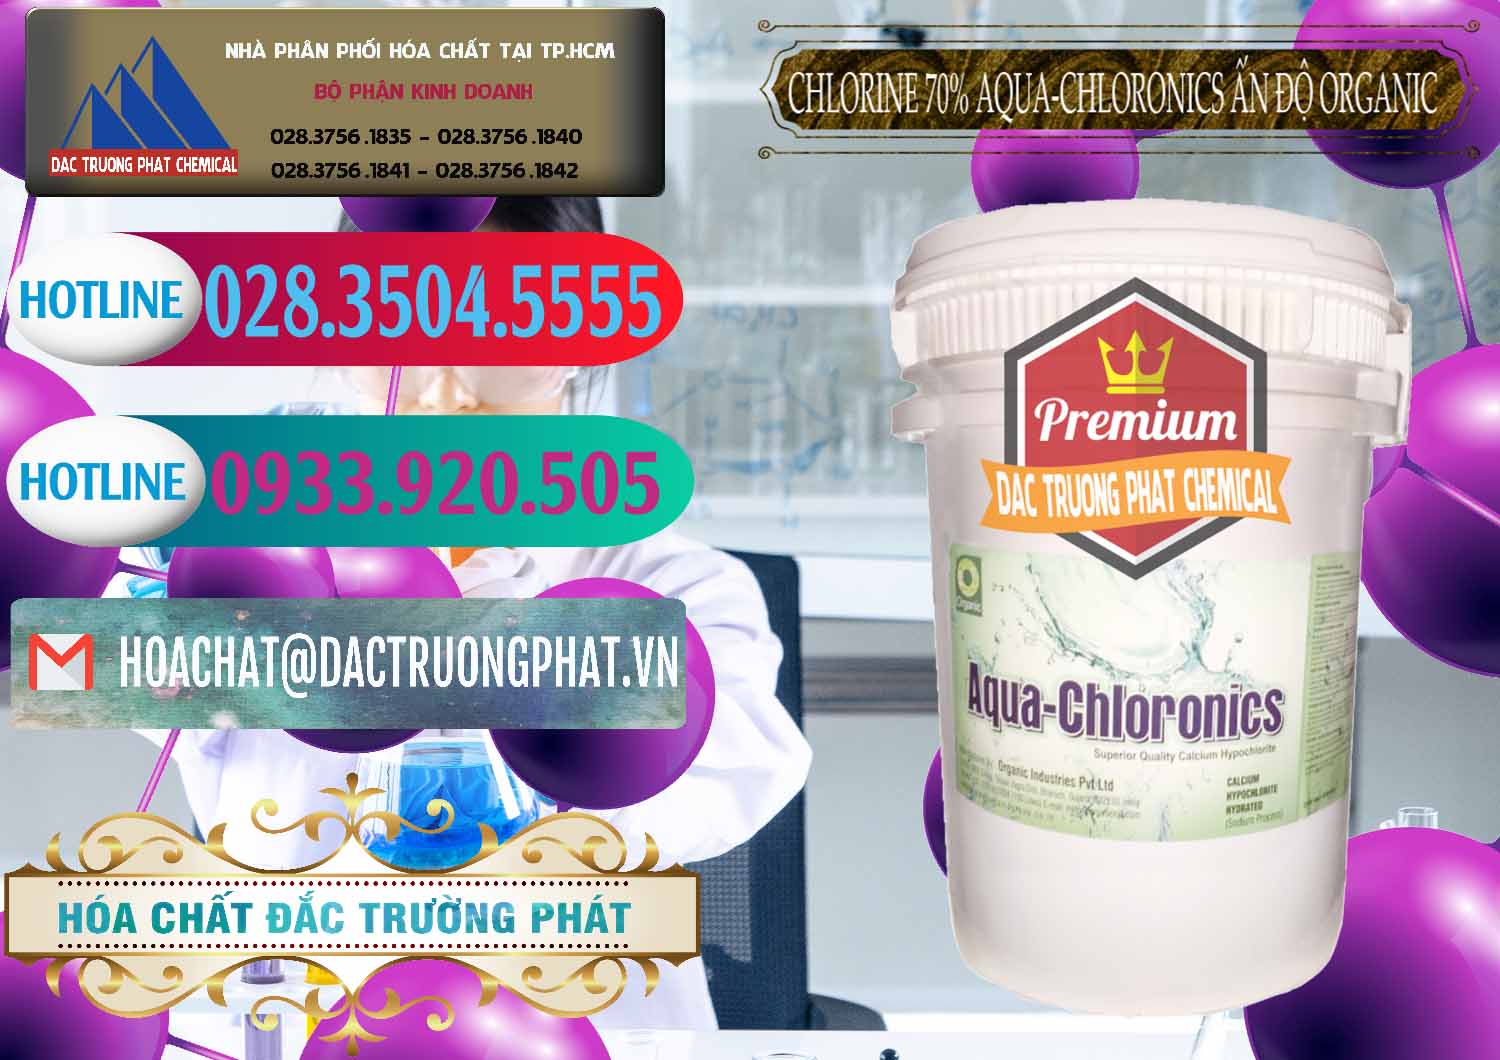 Chuyên cung cấp - bán Chlorine – Clorin 70% Aqua-Chloronics Ấn Độ Organic India - 0211 - Nhà phân phối ( bán ) hóa chất tại TP.HCM - truongphat.vn